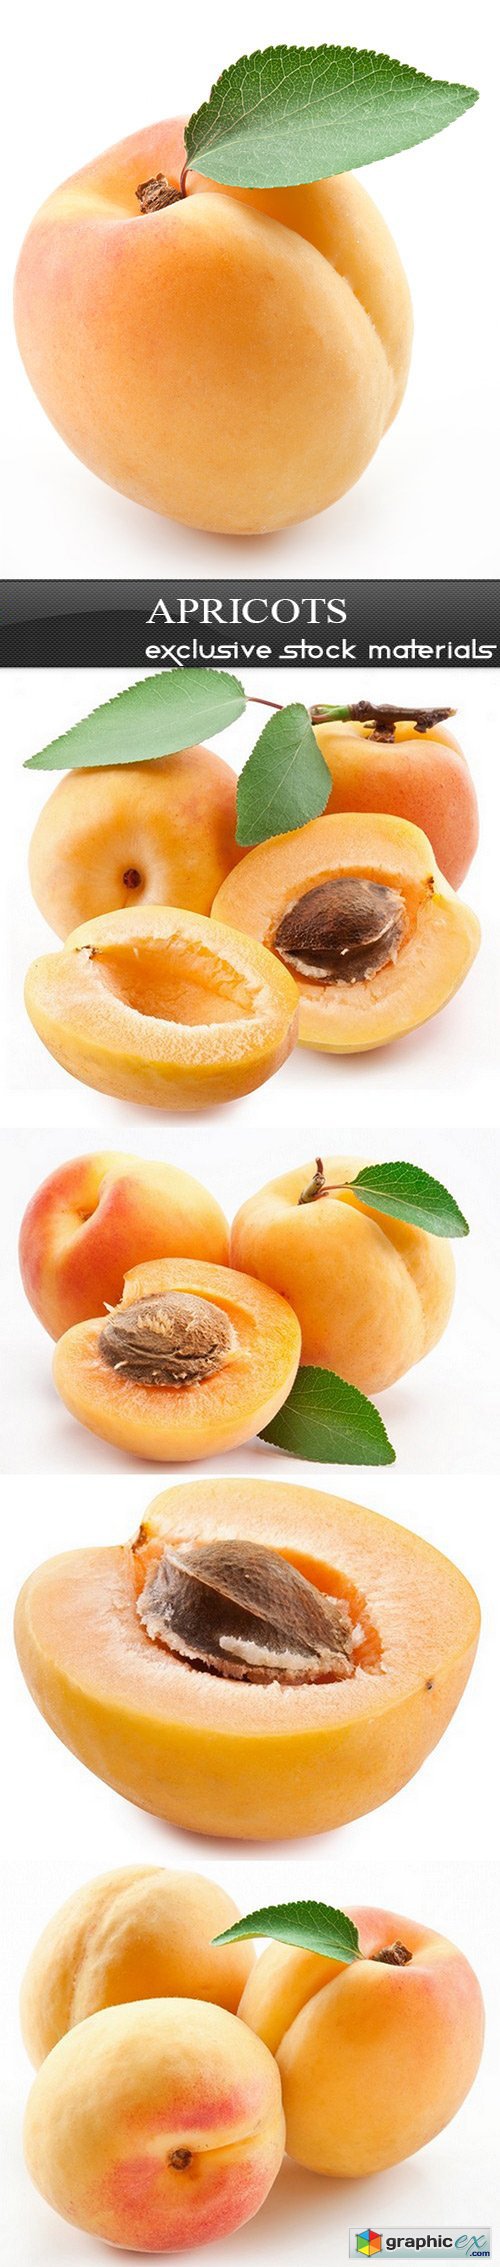 Apricots - 5 UHQ JPEG